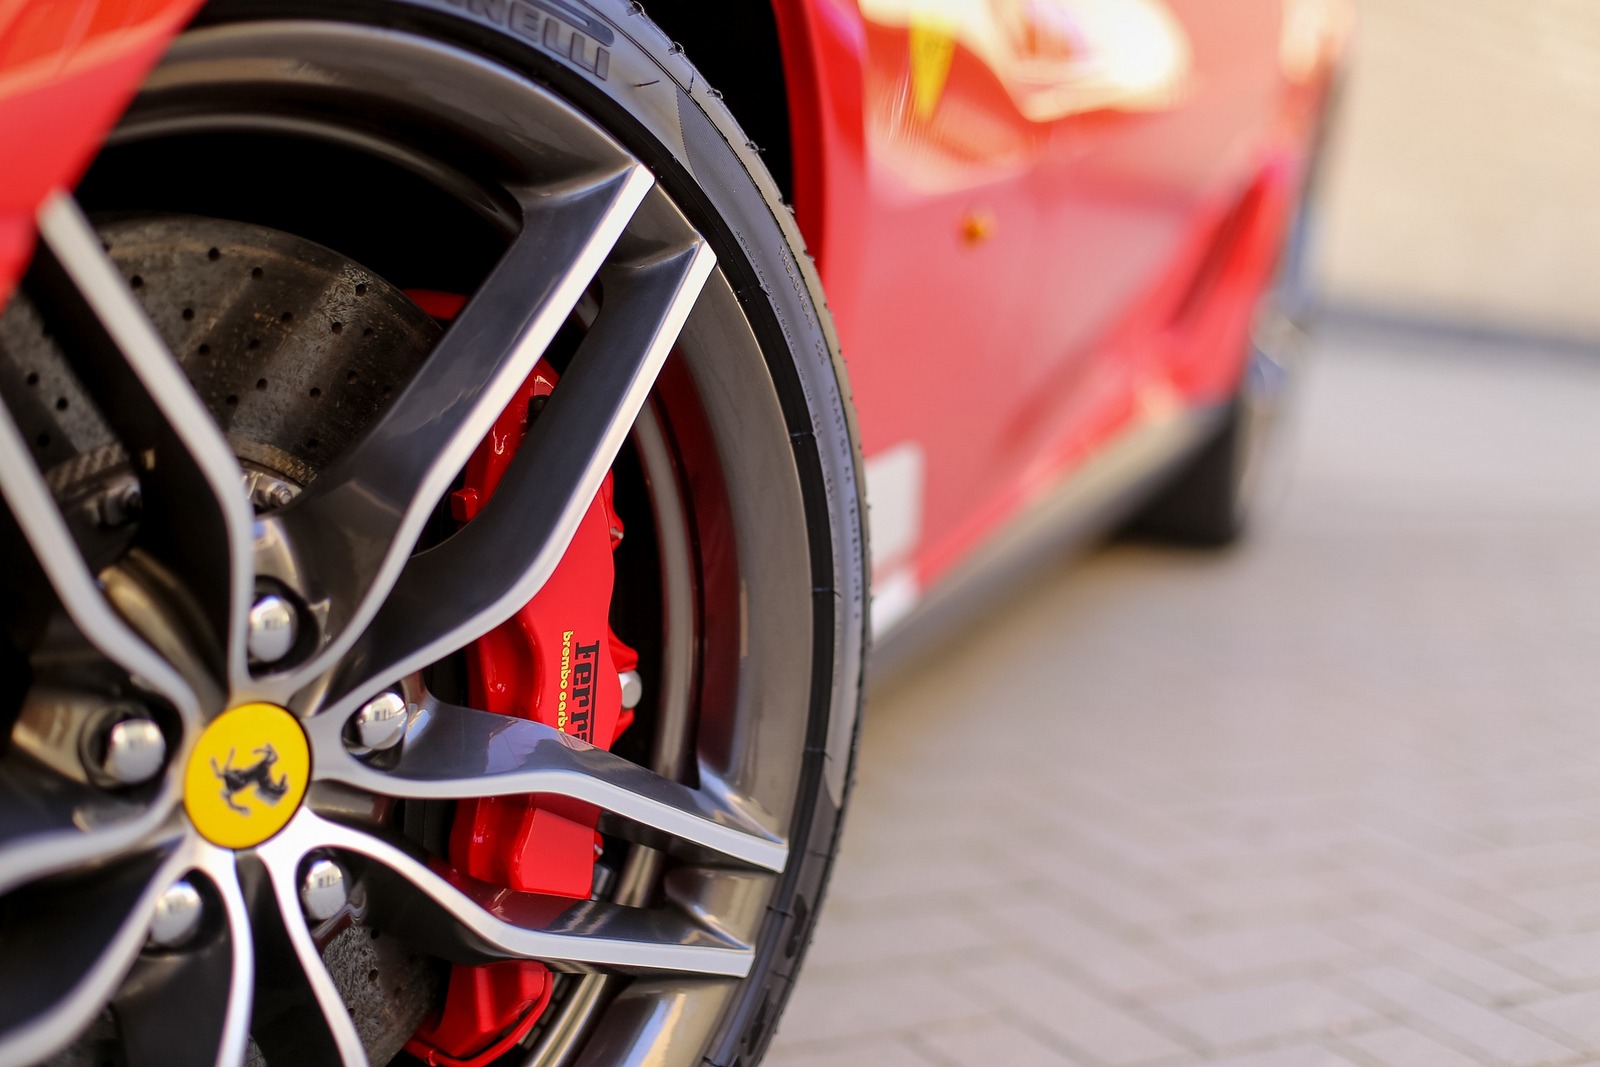 La sonorité d’une Ferrari est aussi importante que sa robe distinctive. © David Jewiss, CC0 Creative Commons, Pixabay

